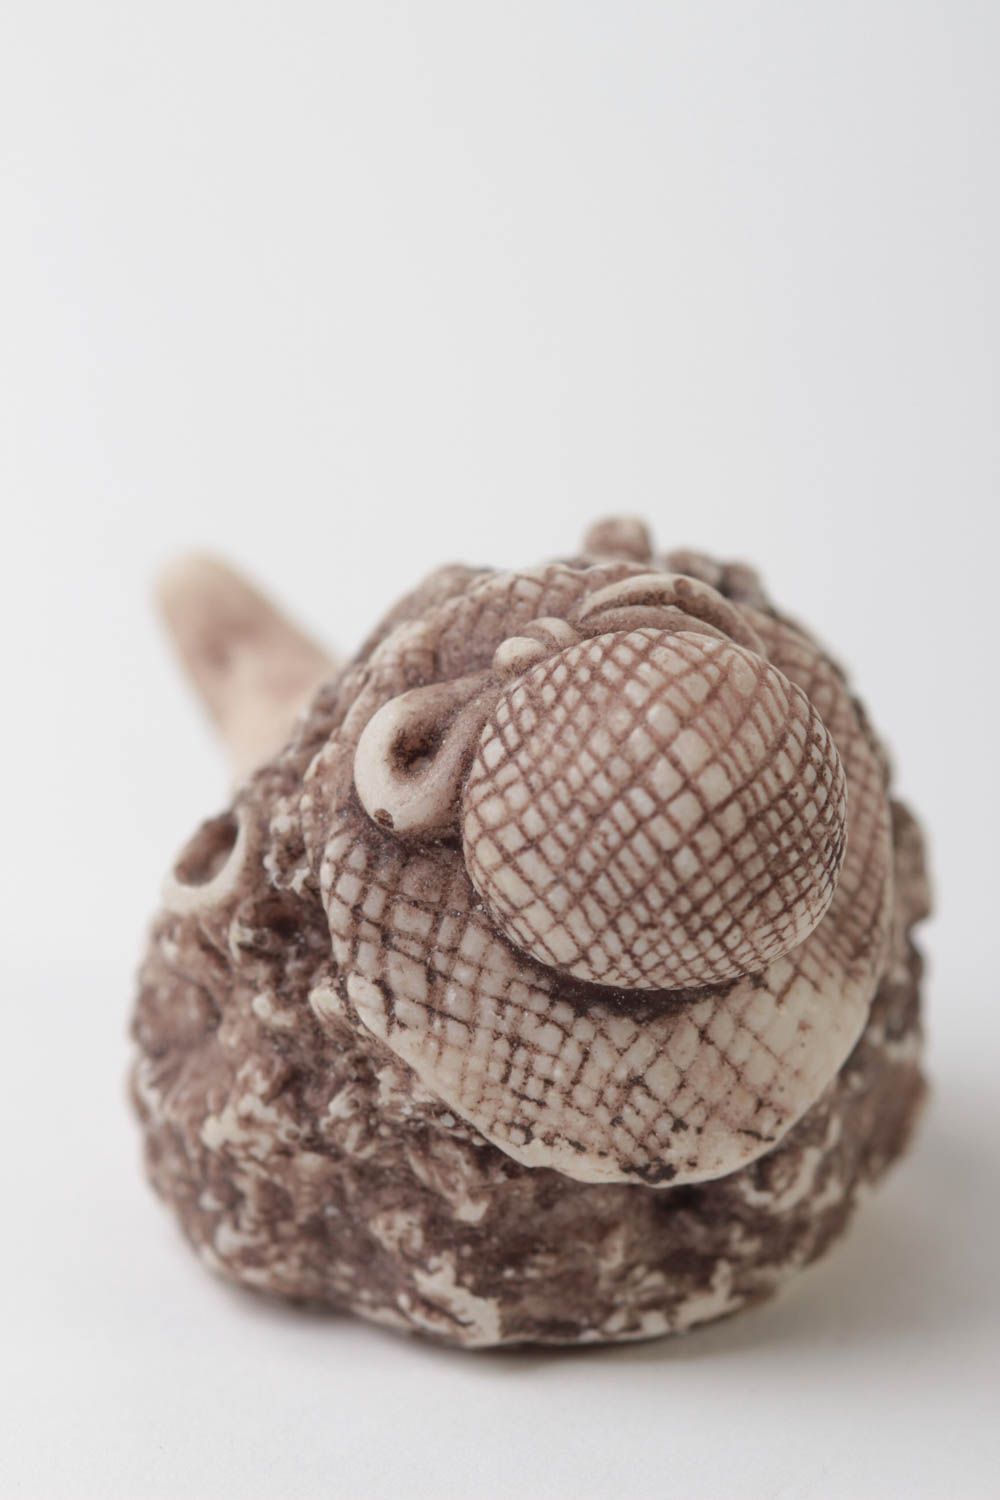 Миниатюрная фигурка из полимерной смолы в виде ежика в шляпке для декора фото 4